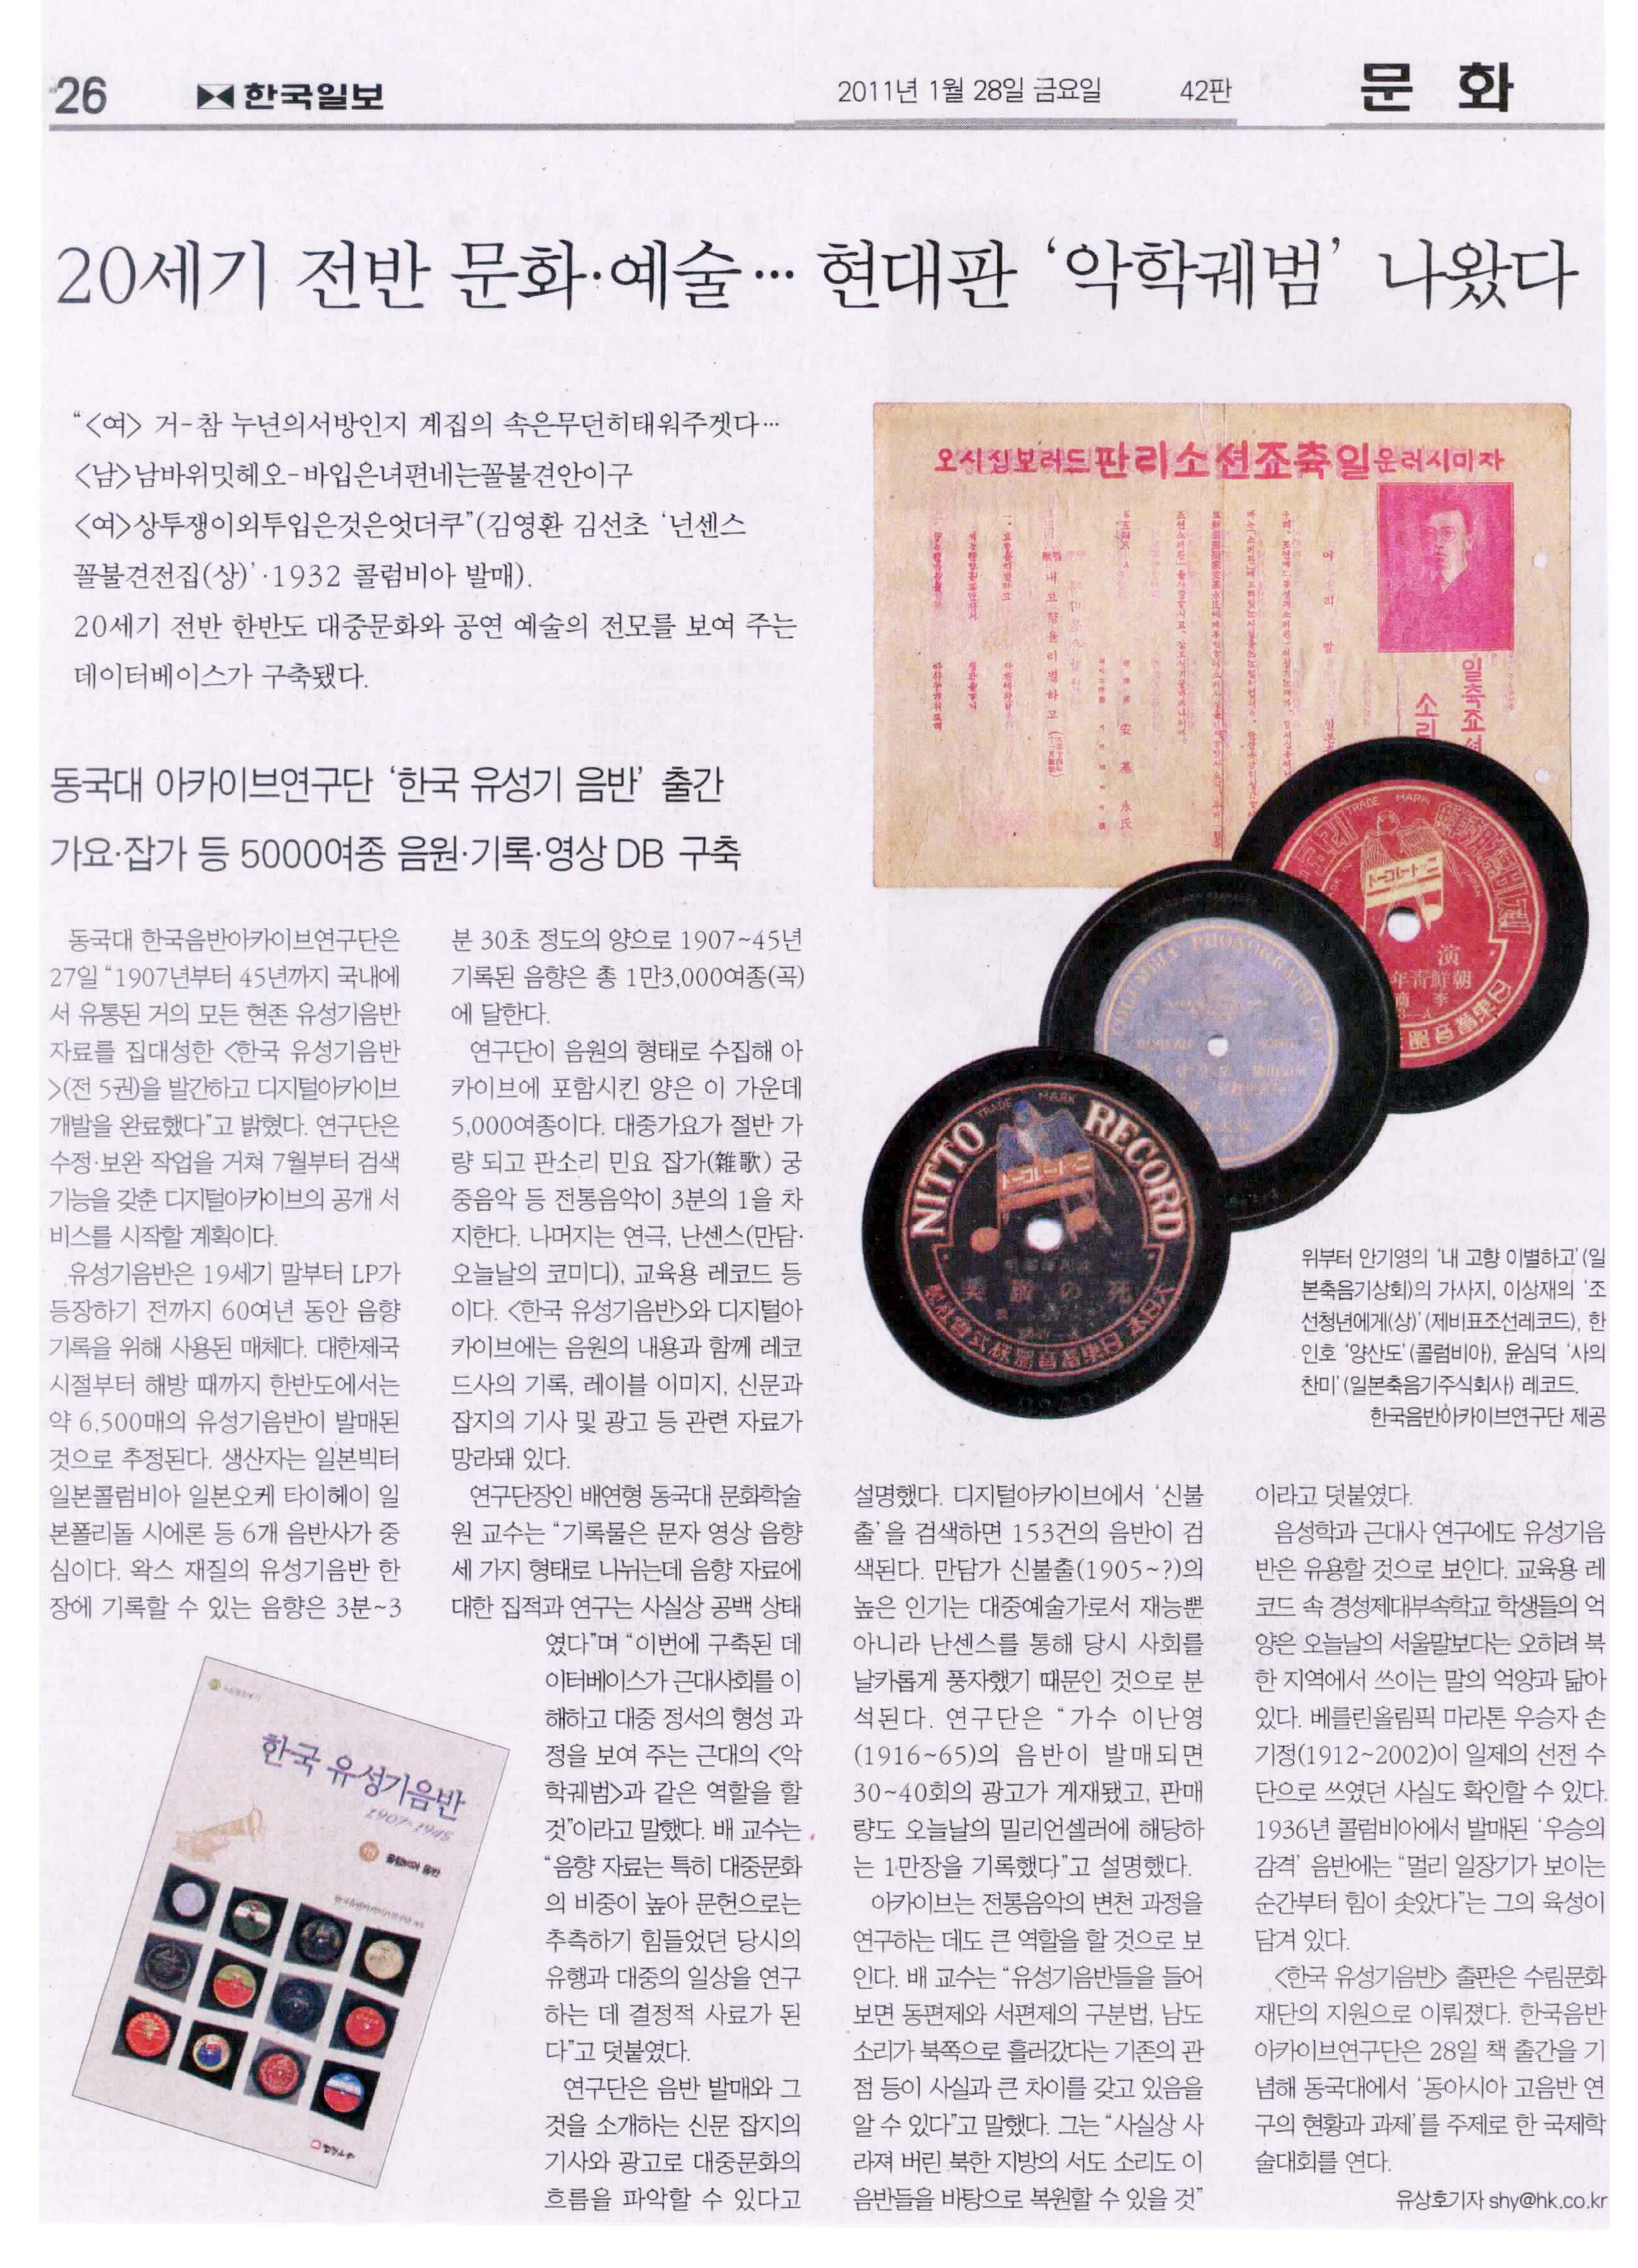 2011-01-28-한국일보-20세기 전반 문화예술 현대판 악학궤범 나왔다.jpg